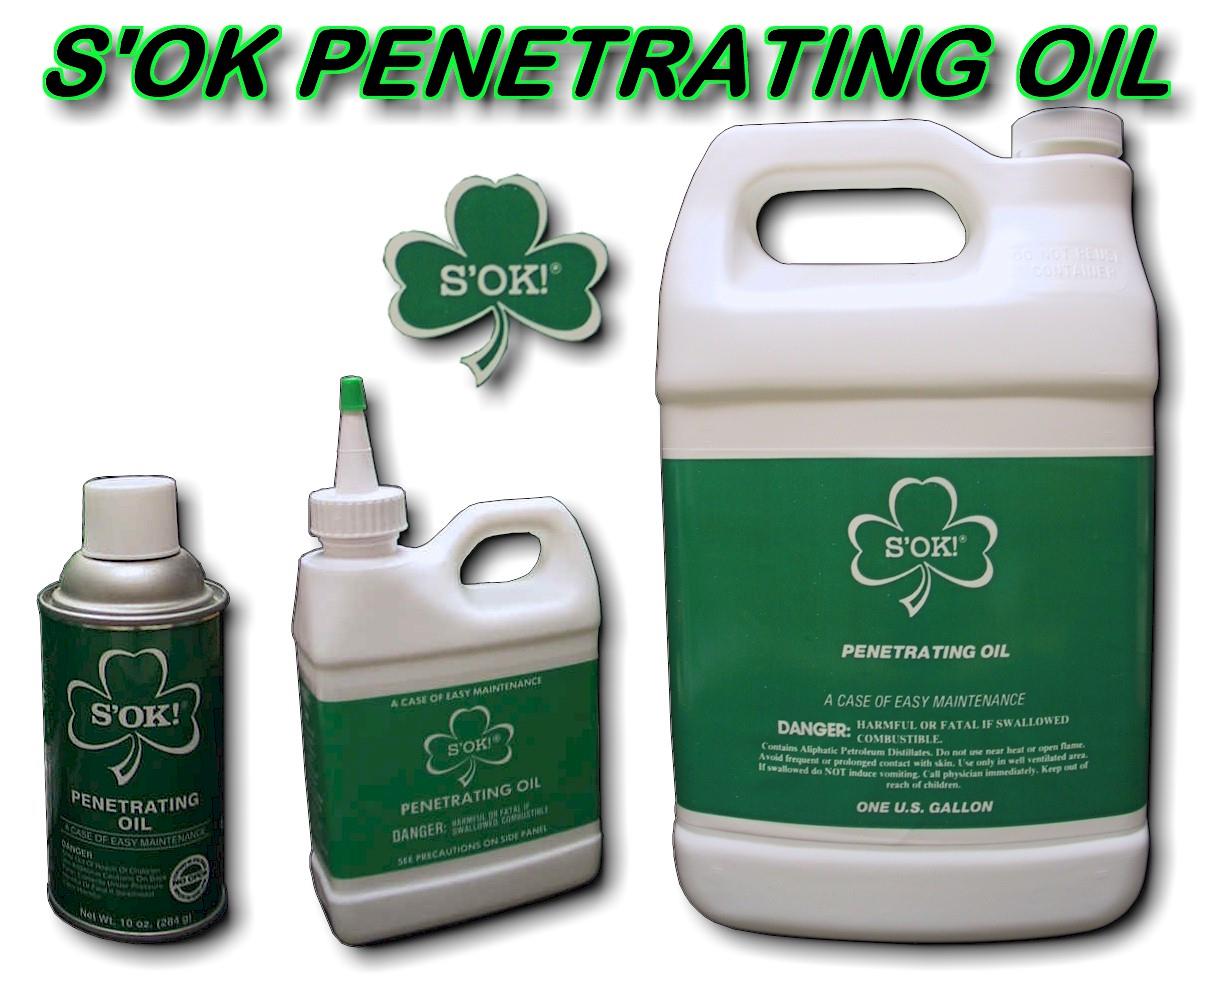 Shamrock S'OK! Rod & Reel Cleaner and Penetrating Oil